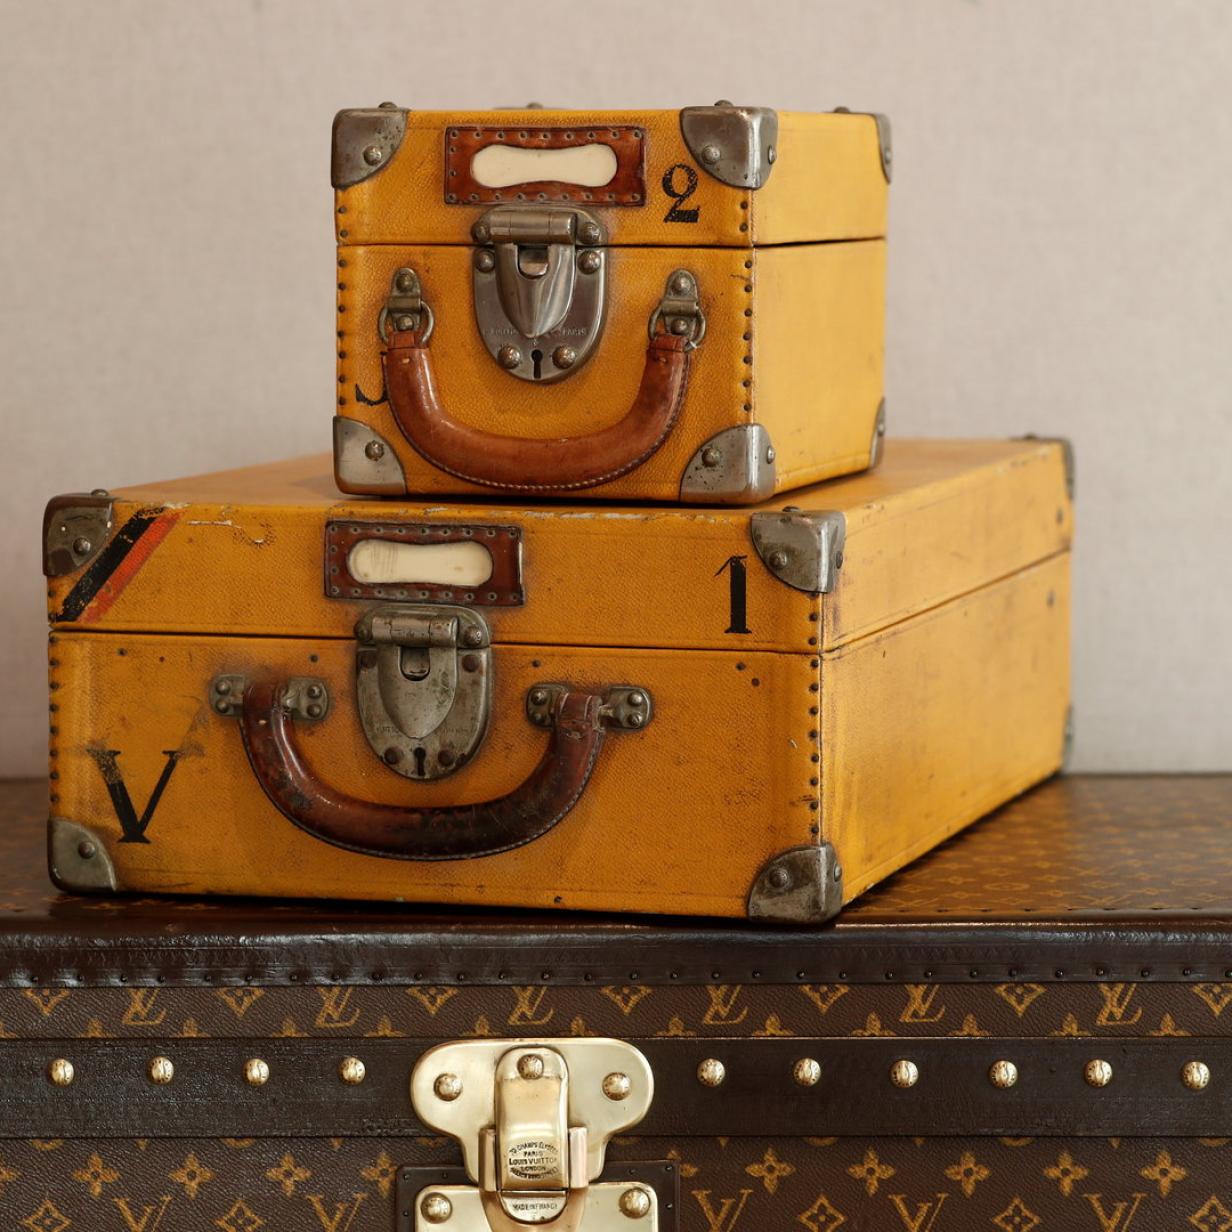 Auktion für Afrika: Ein Vuitton-Koffer für jeden Sonderwunsch - WELT